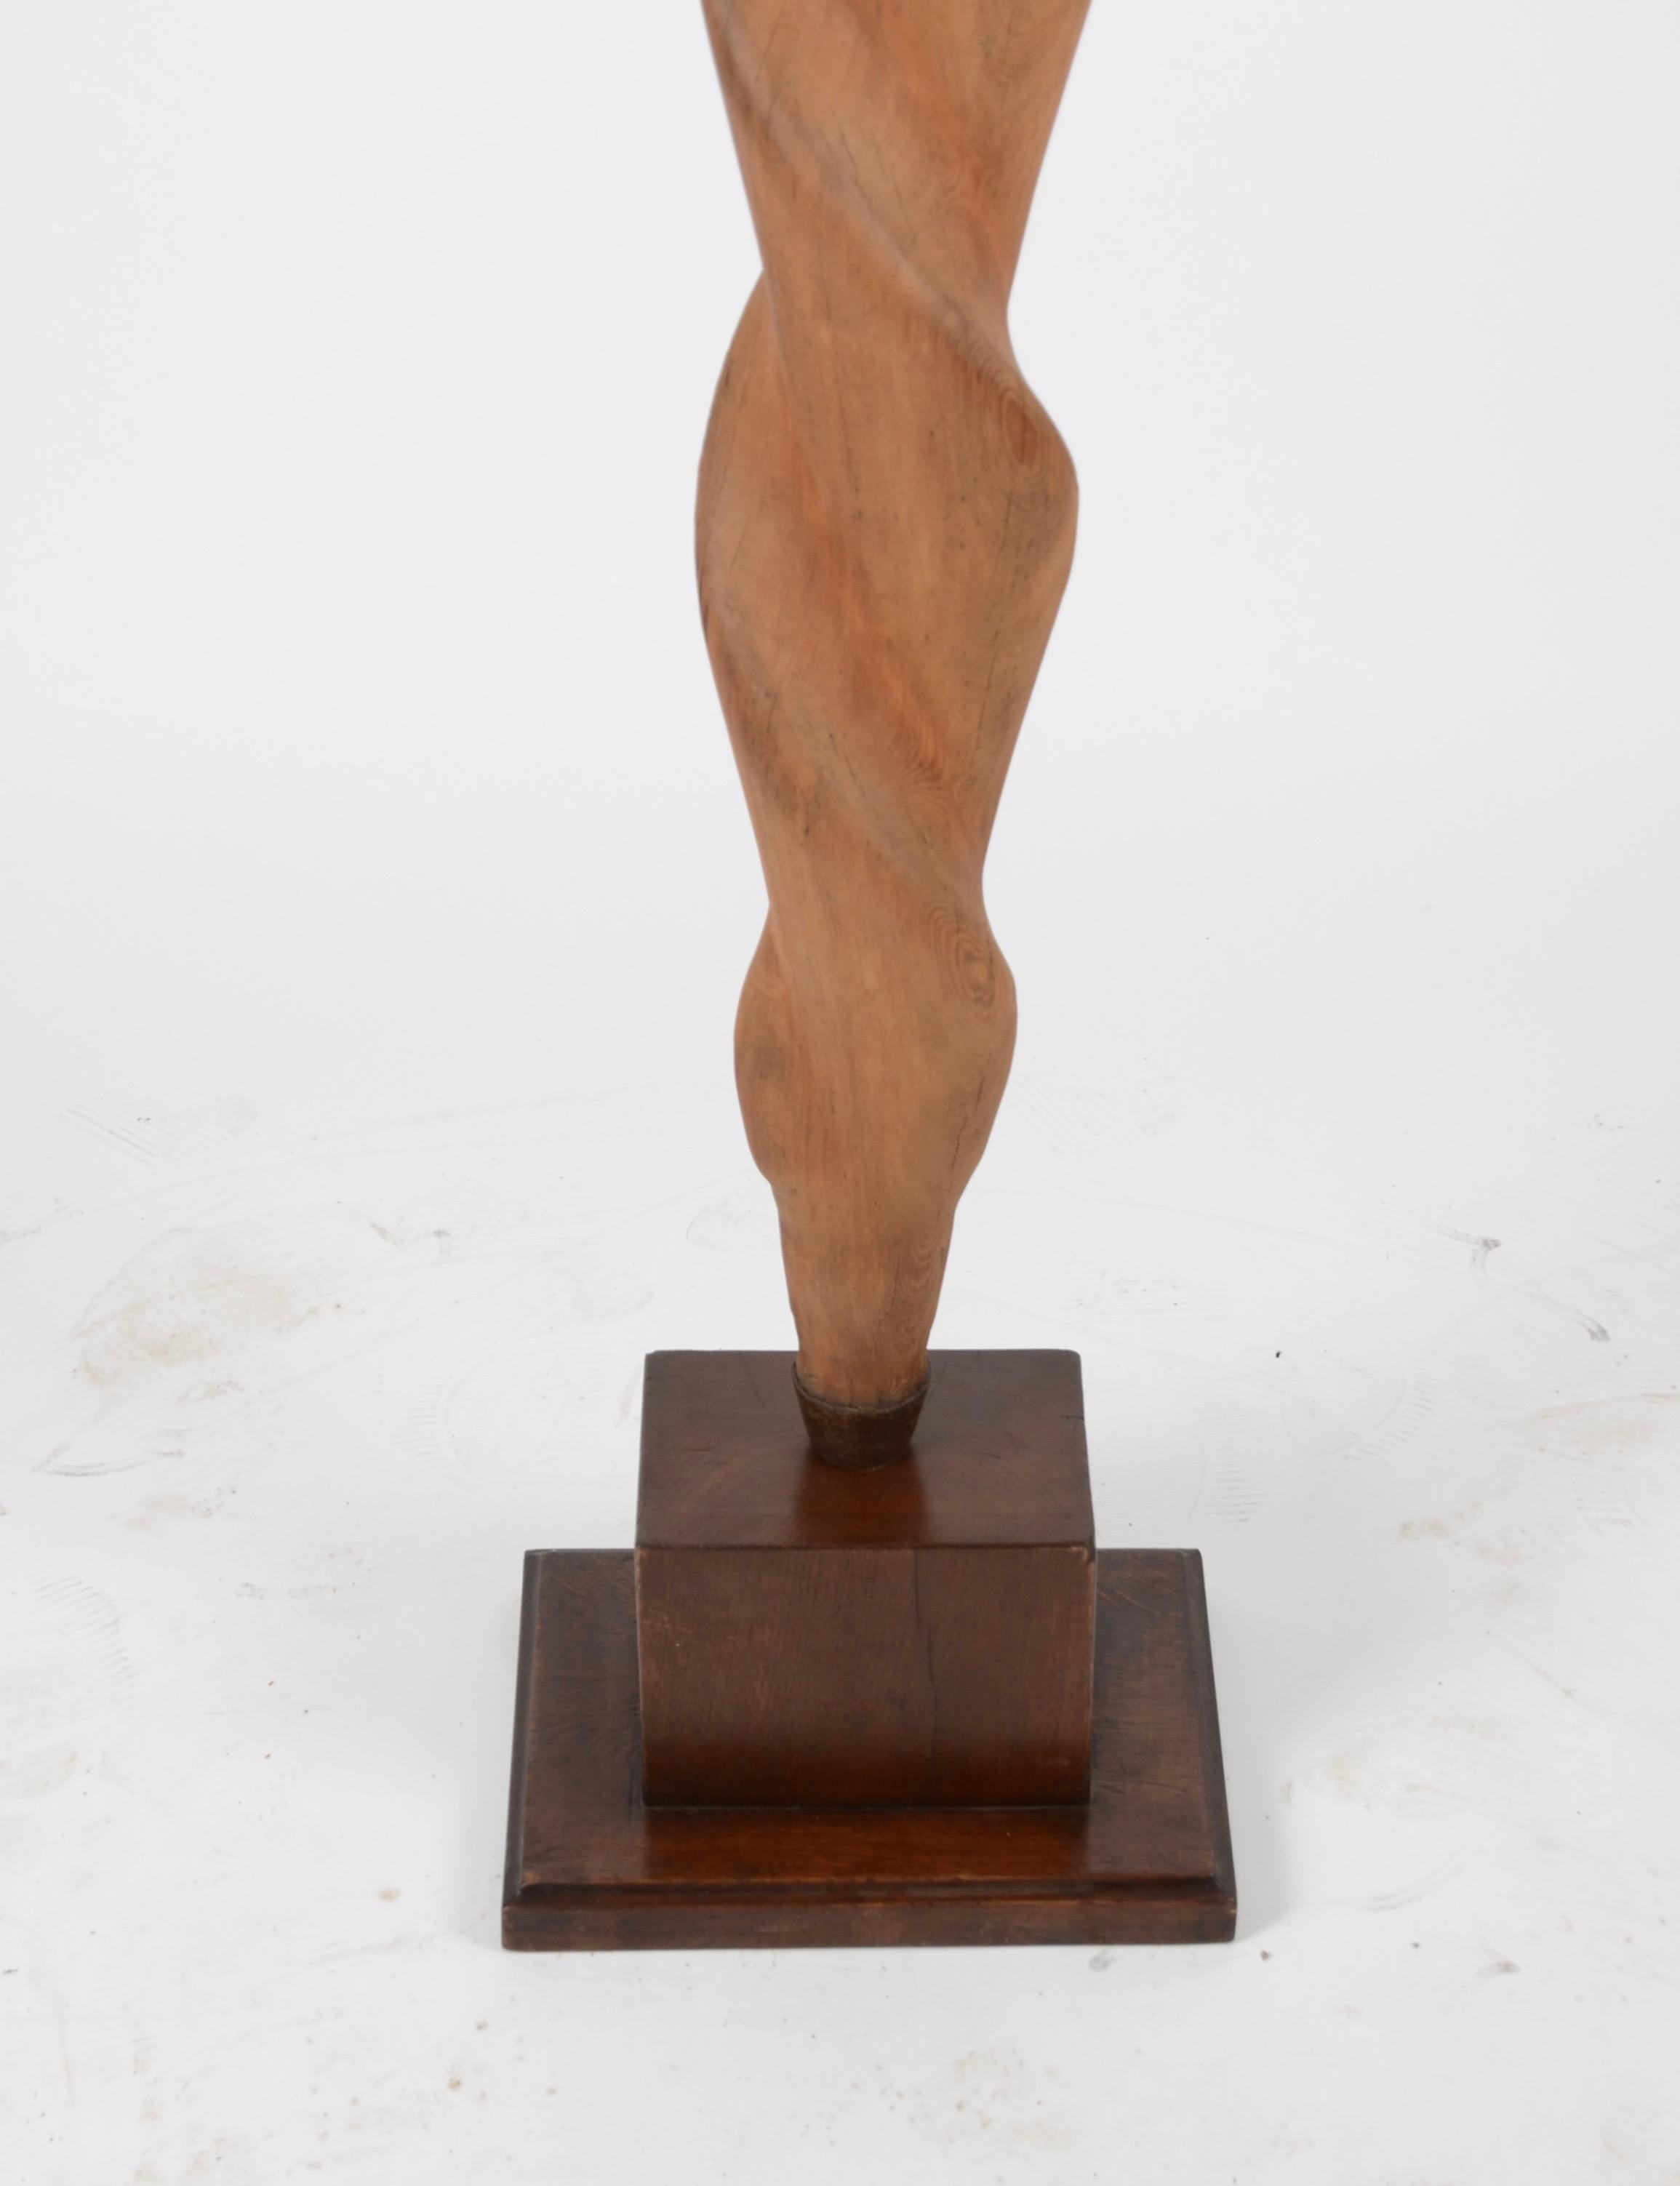 Wooden sculpture, Sweden, 1910s-1920s. Measures: Height 174 cm.